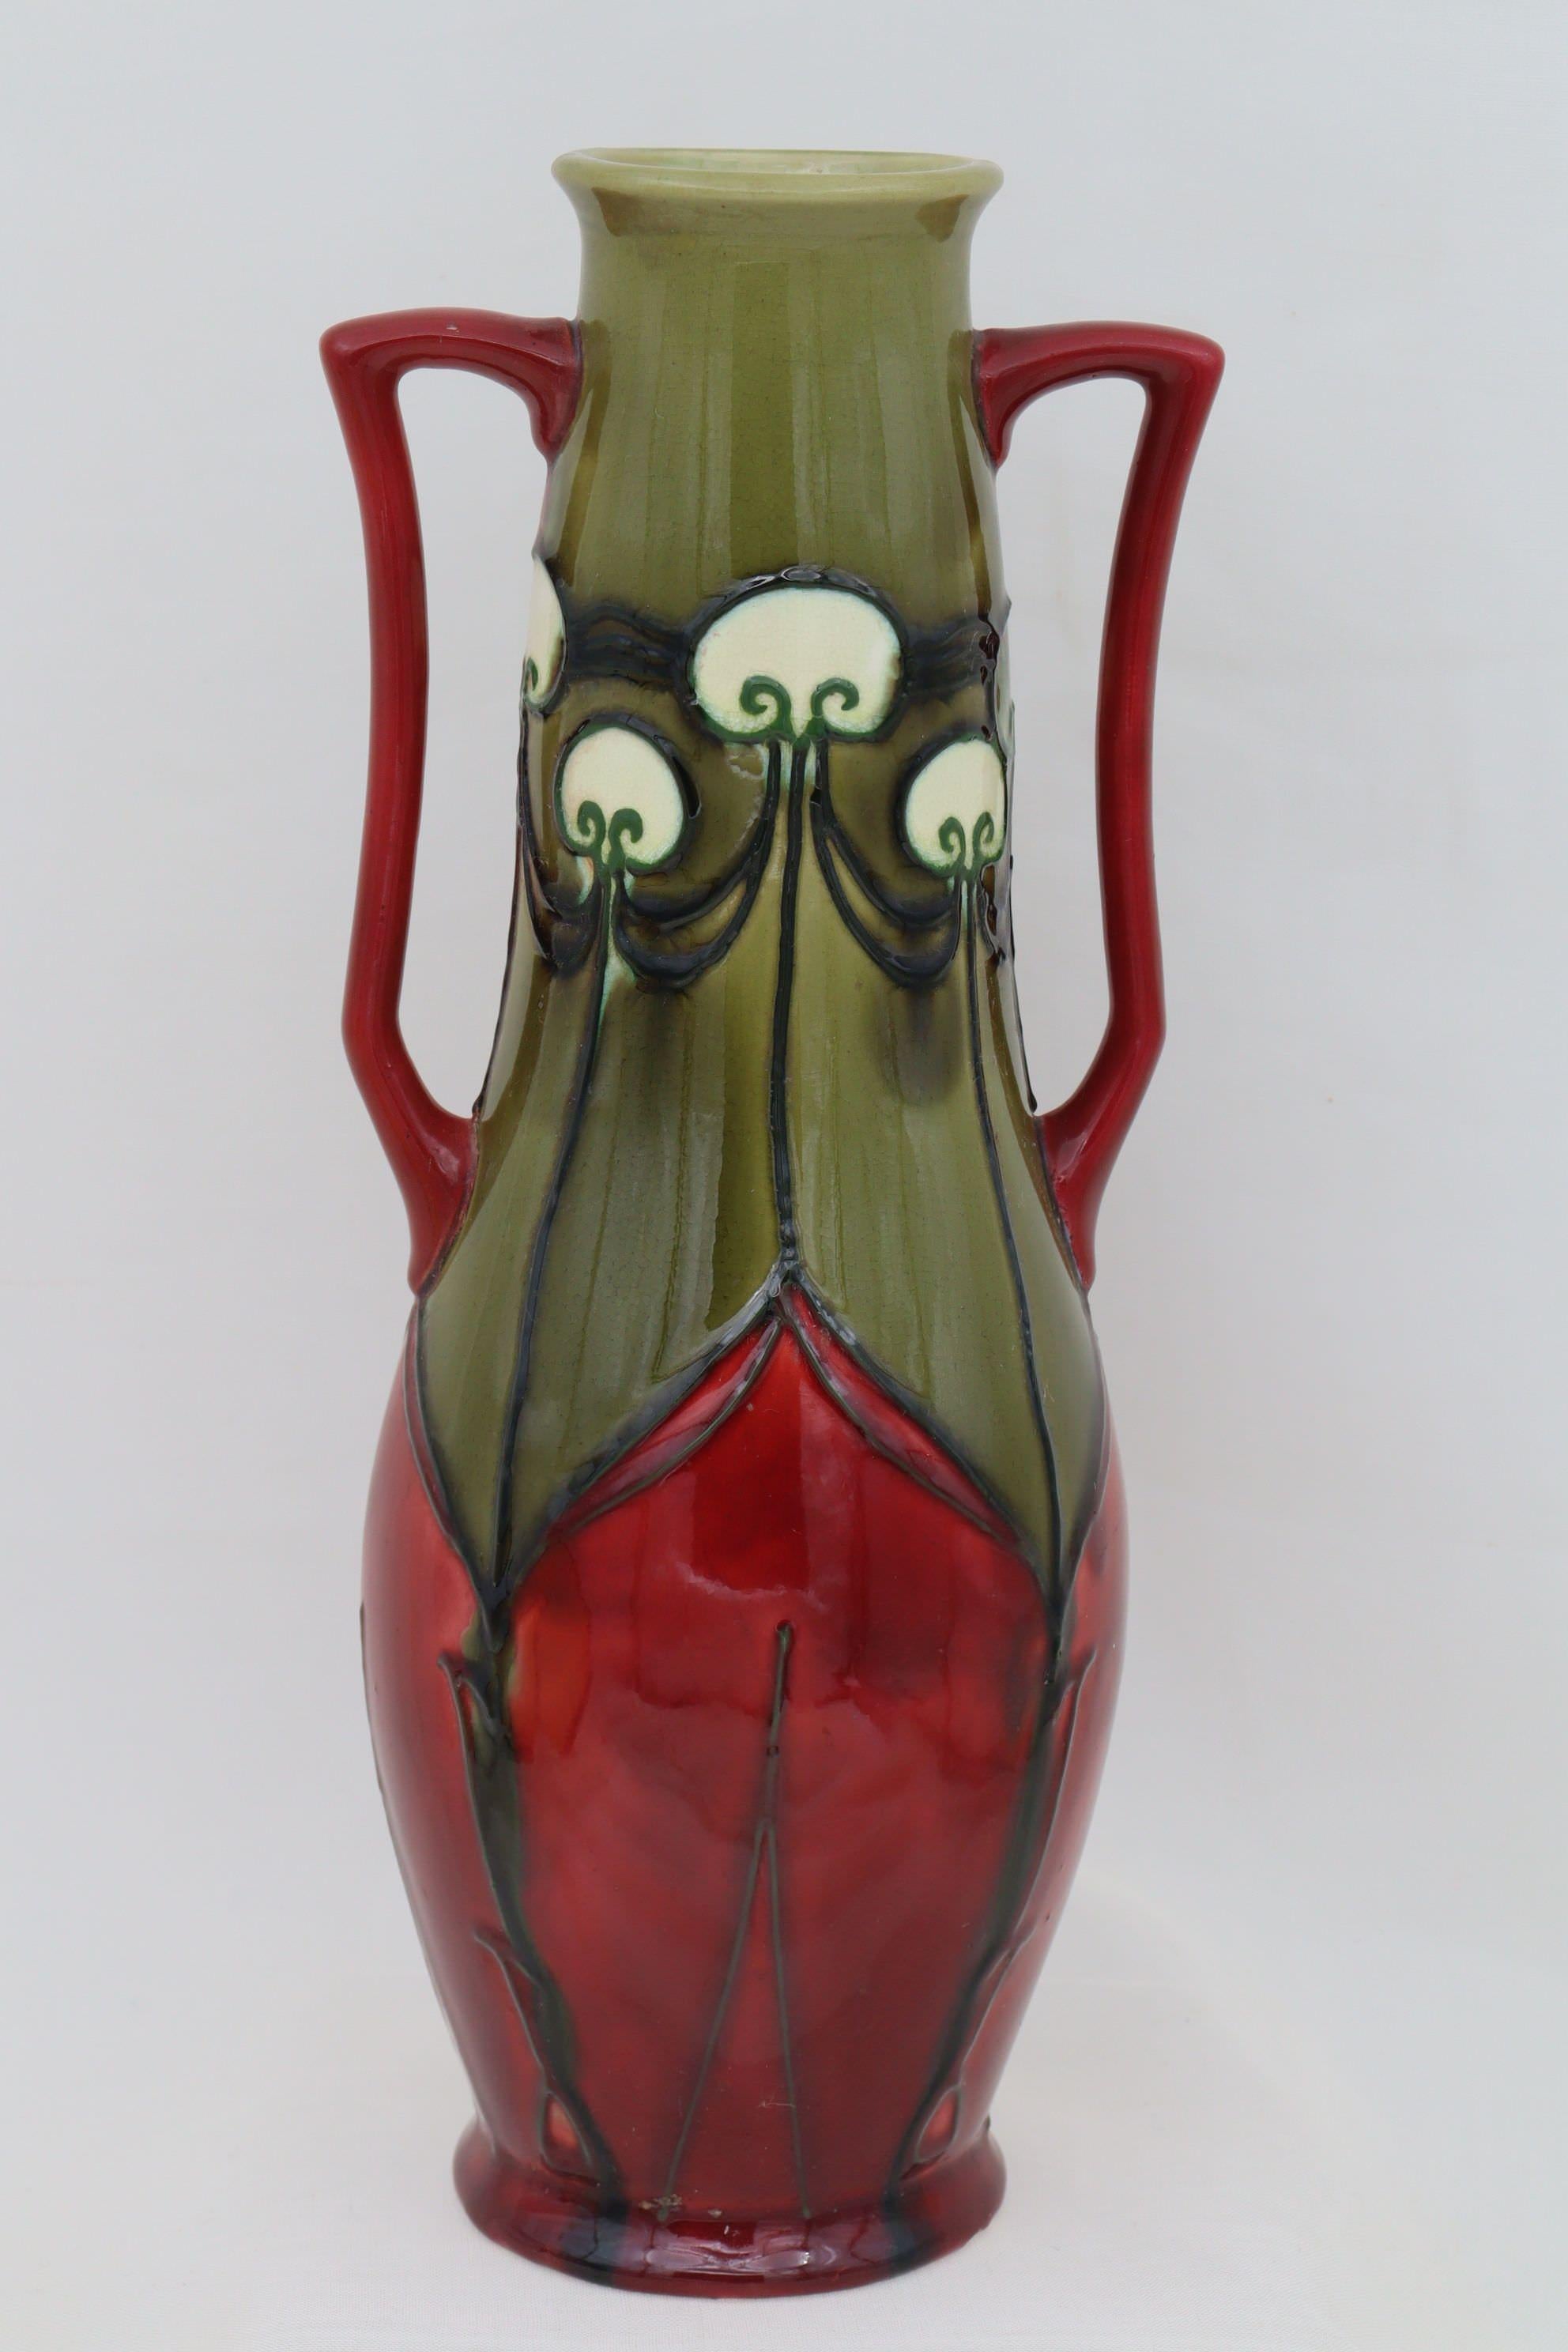 Diese Vase von Minton stammt aus der Secessionist-Ware-Serie und ist mit der Musternummer 10 verziert. Das Muster wird durch eine Rohrverkleidung umrissen und dann mit Majolika-Glasuren gefüllt, in diesem Fall rot, olivgrün und weiß. Die Formnummer